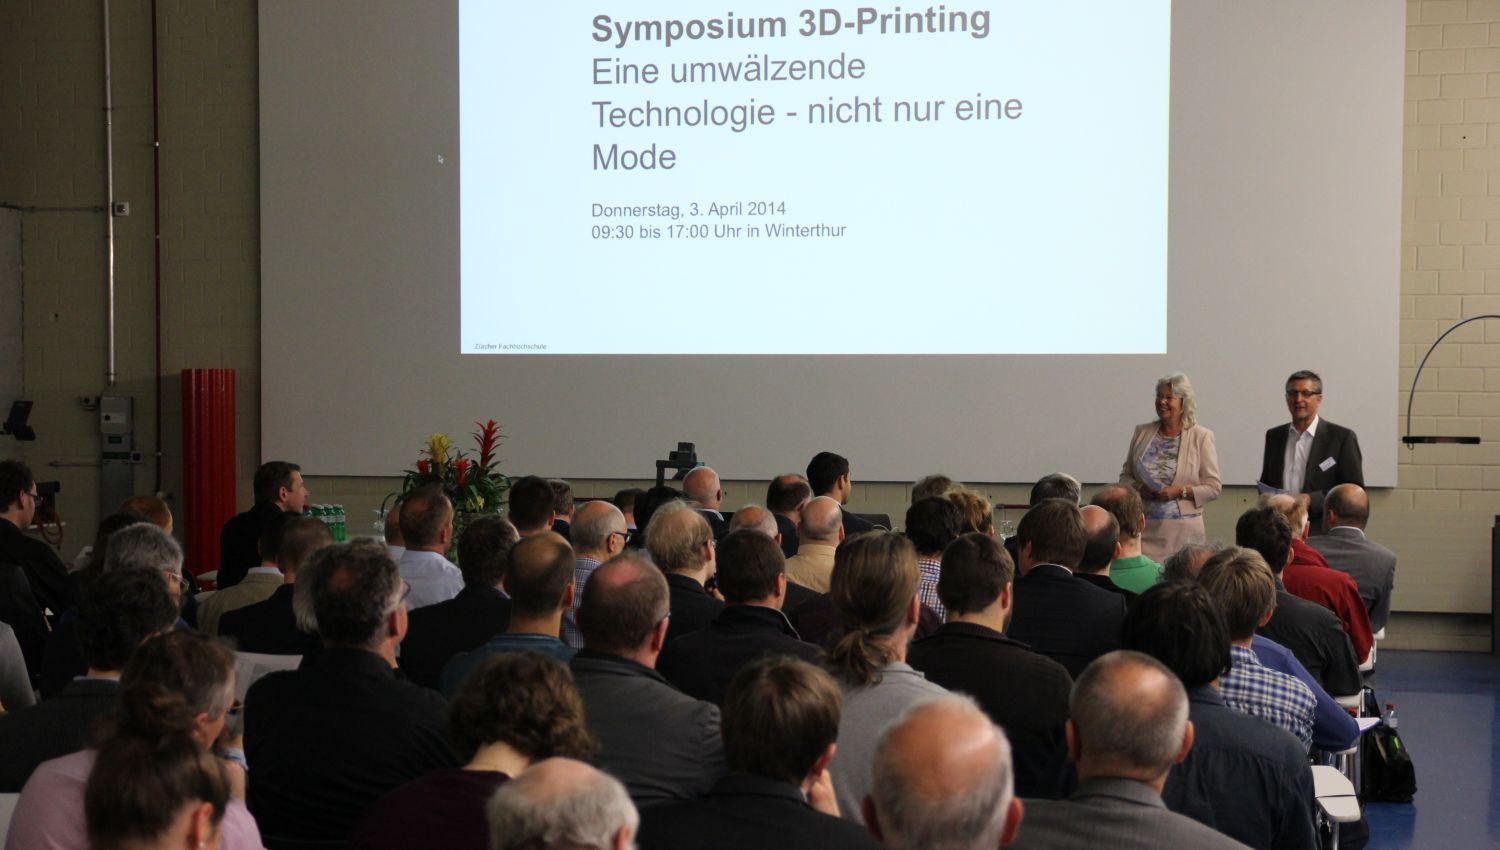 Stimmungsbild vom Plenum am 3D-Printing Symposium